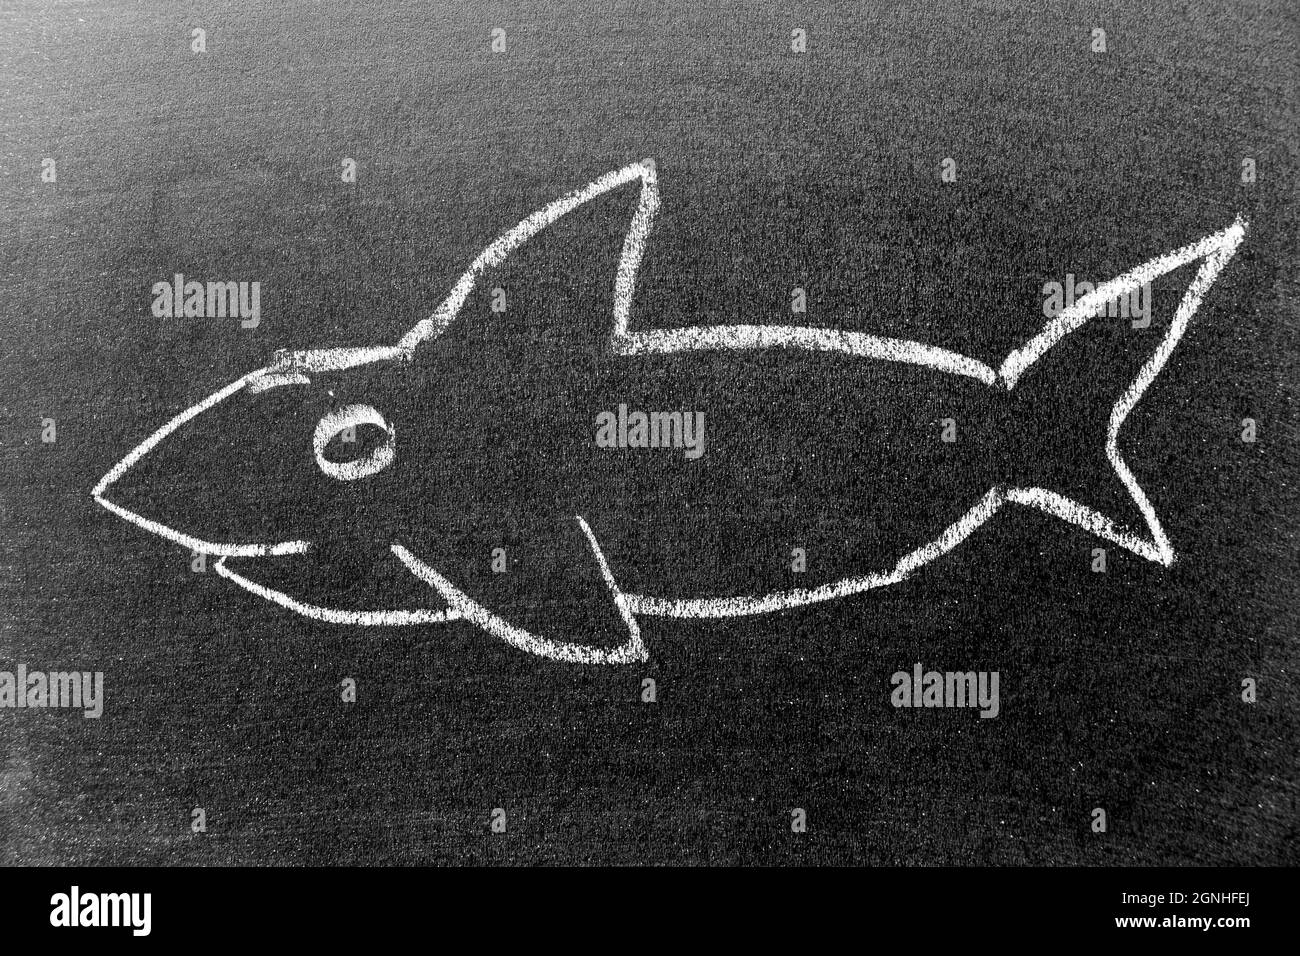 Craie blanche dessin à la main en forme de requin ou d'orque (orque) sur fond noir Banque D'Images